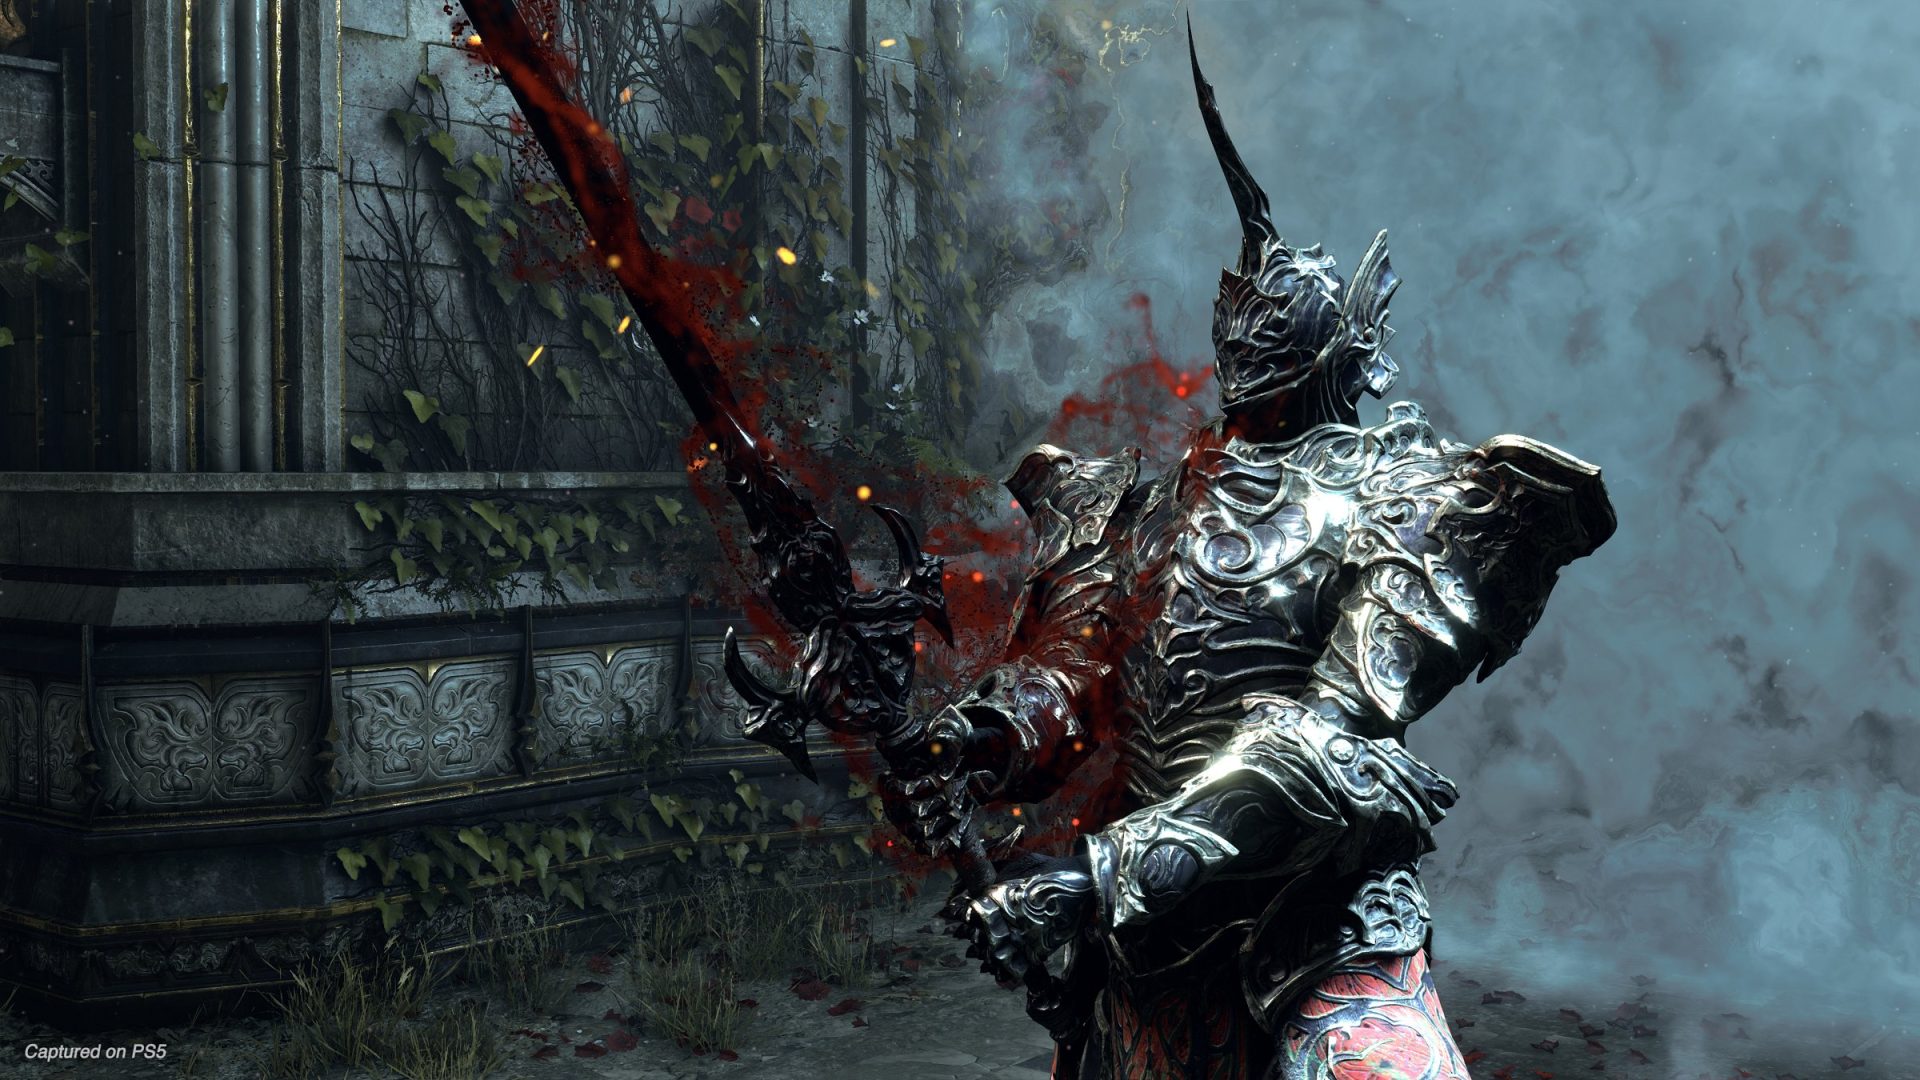 Qual o melhor jogo da From Software - Dark Souls, Bloodborne